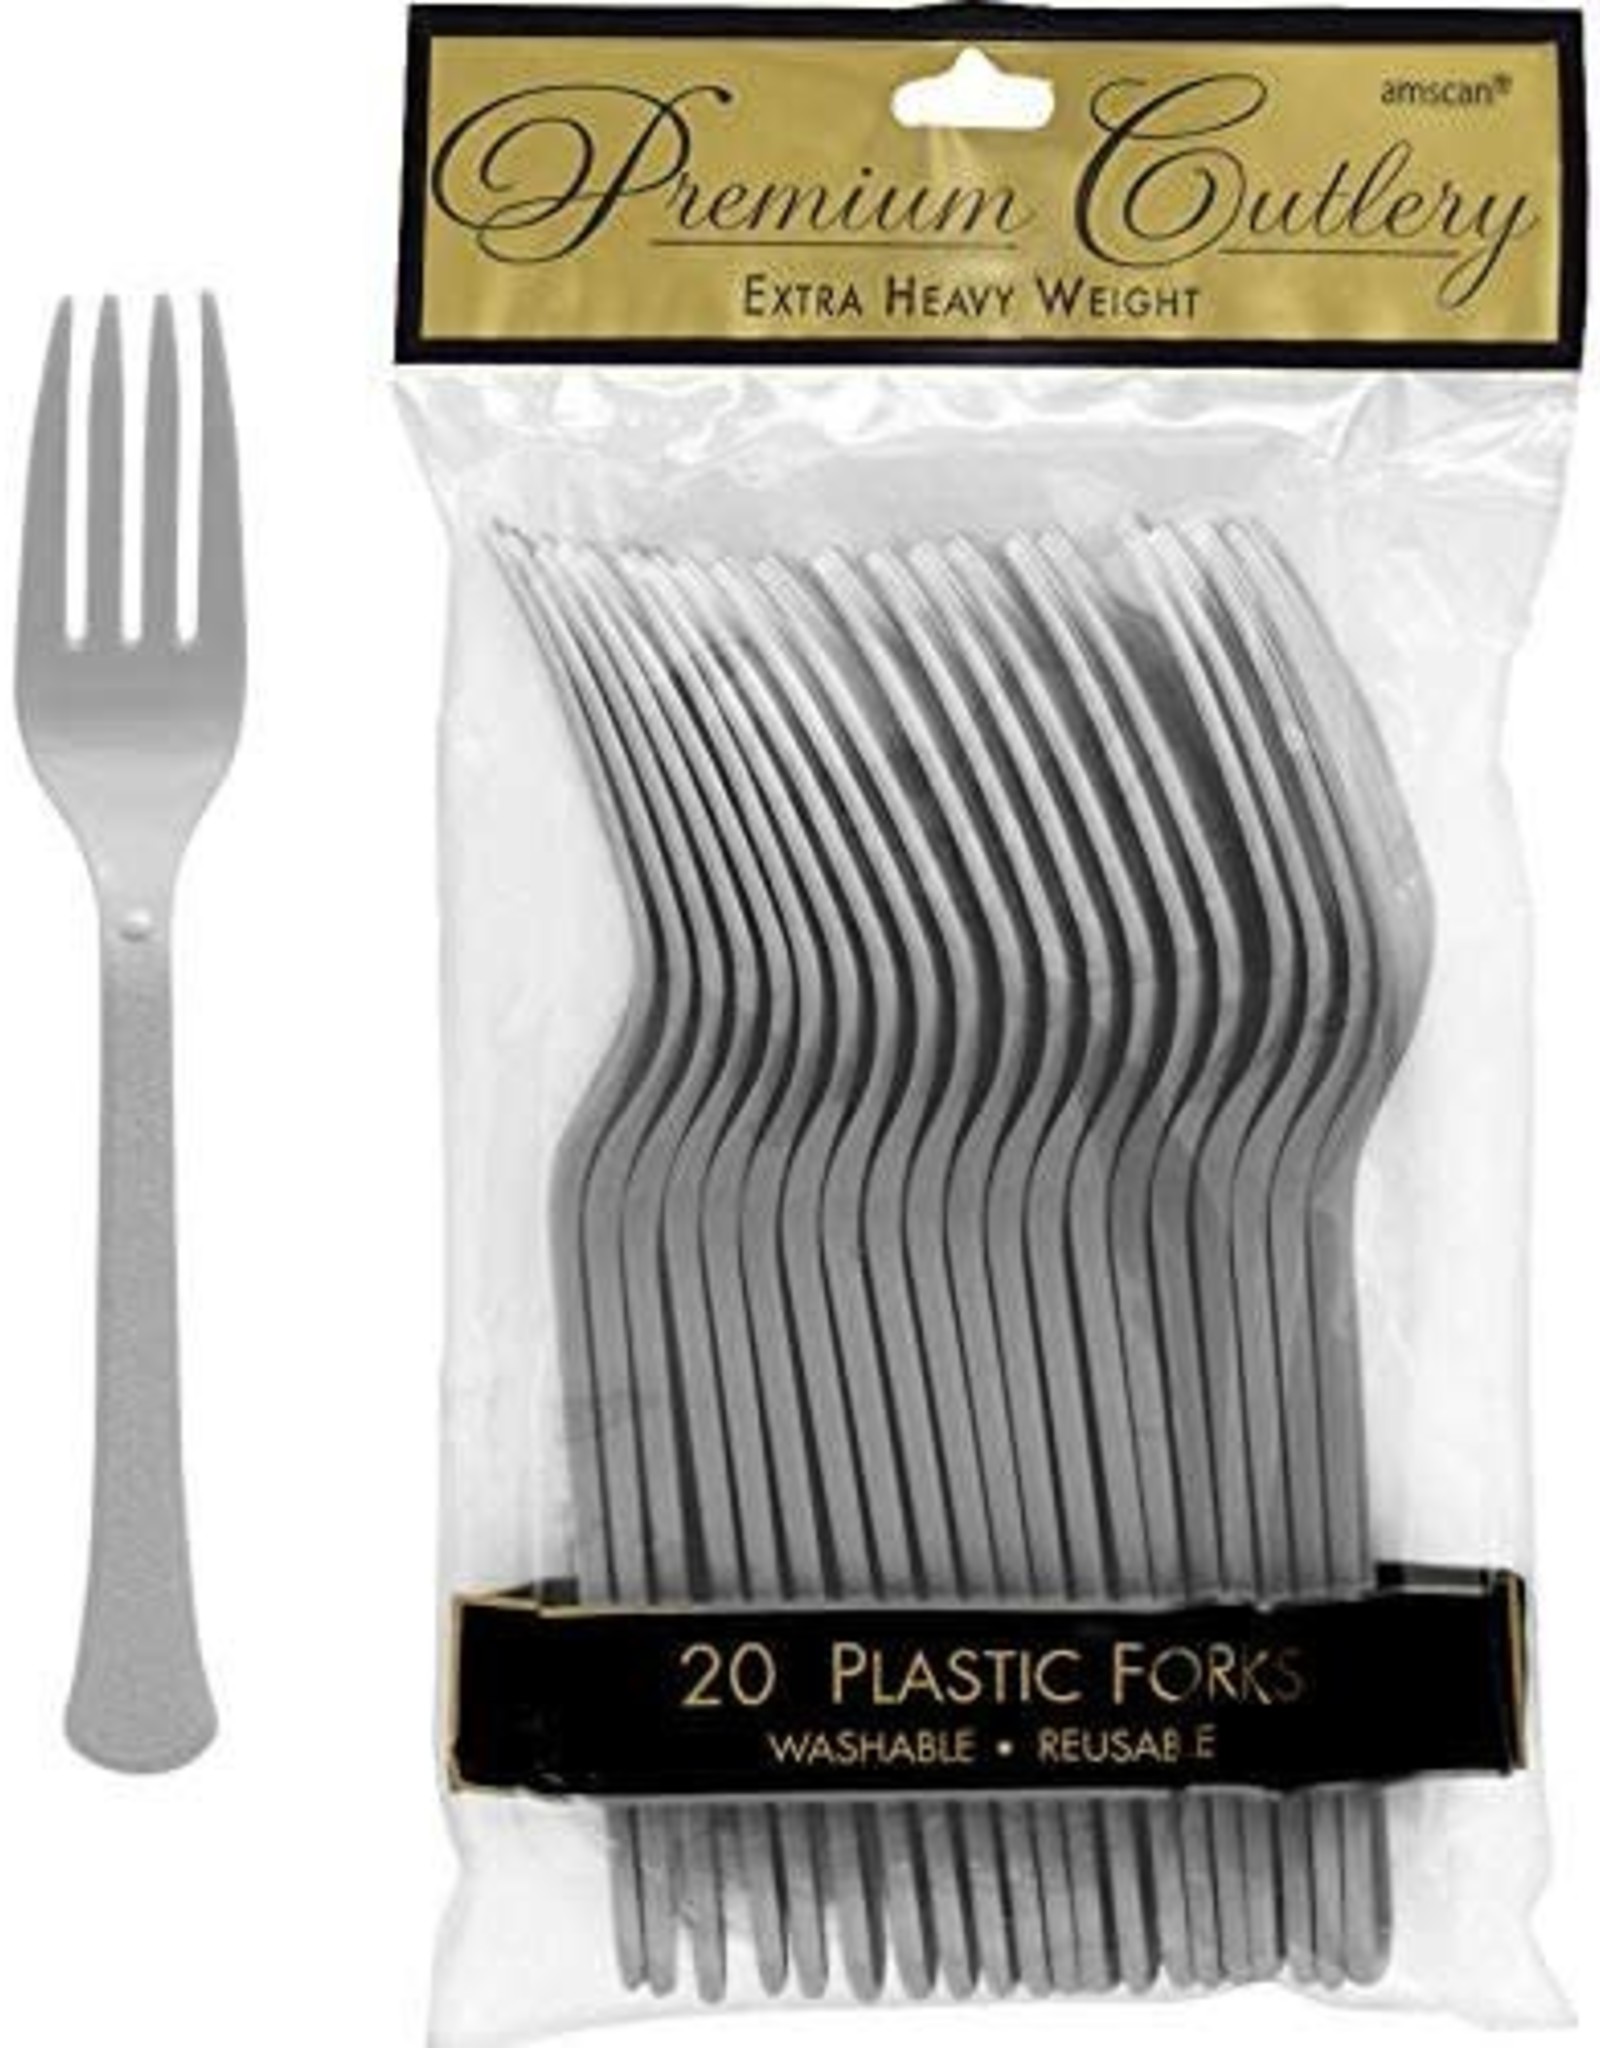 Plastic silver forks